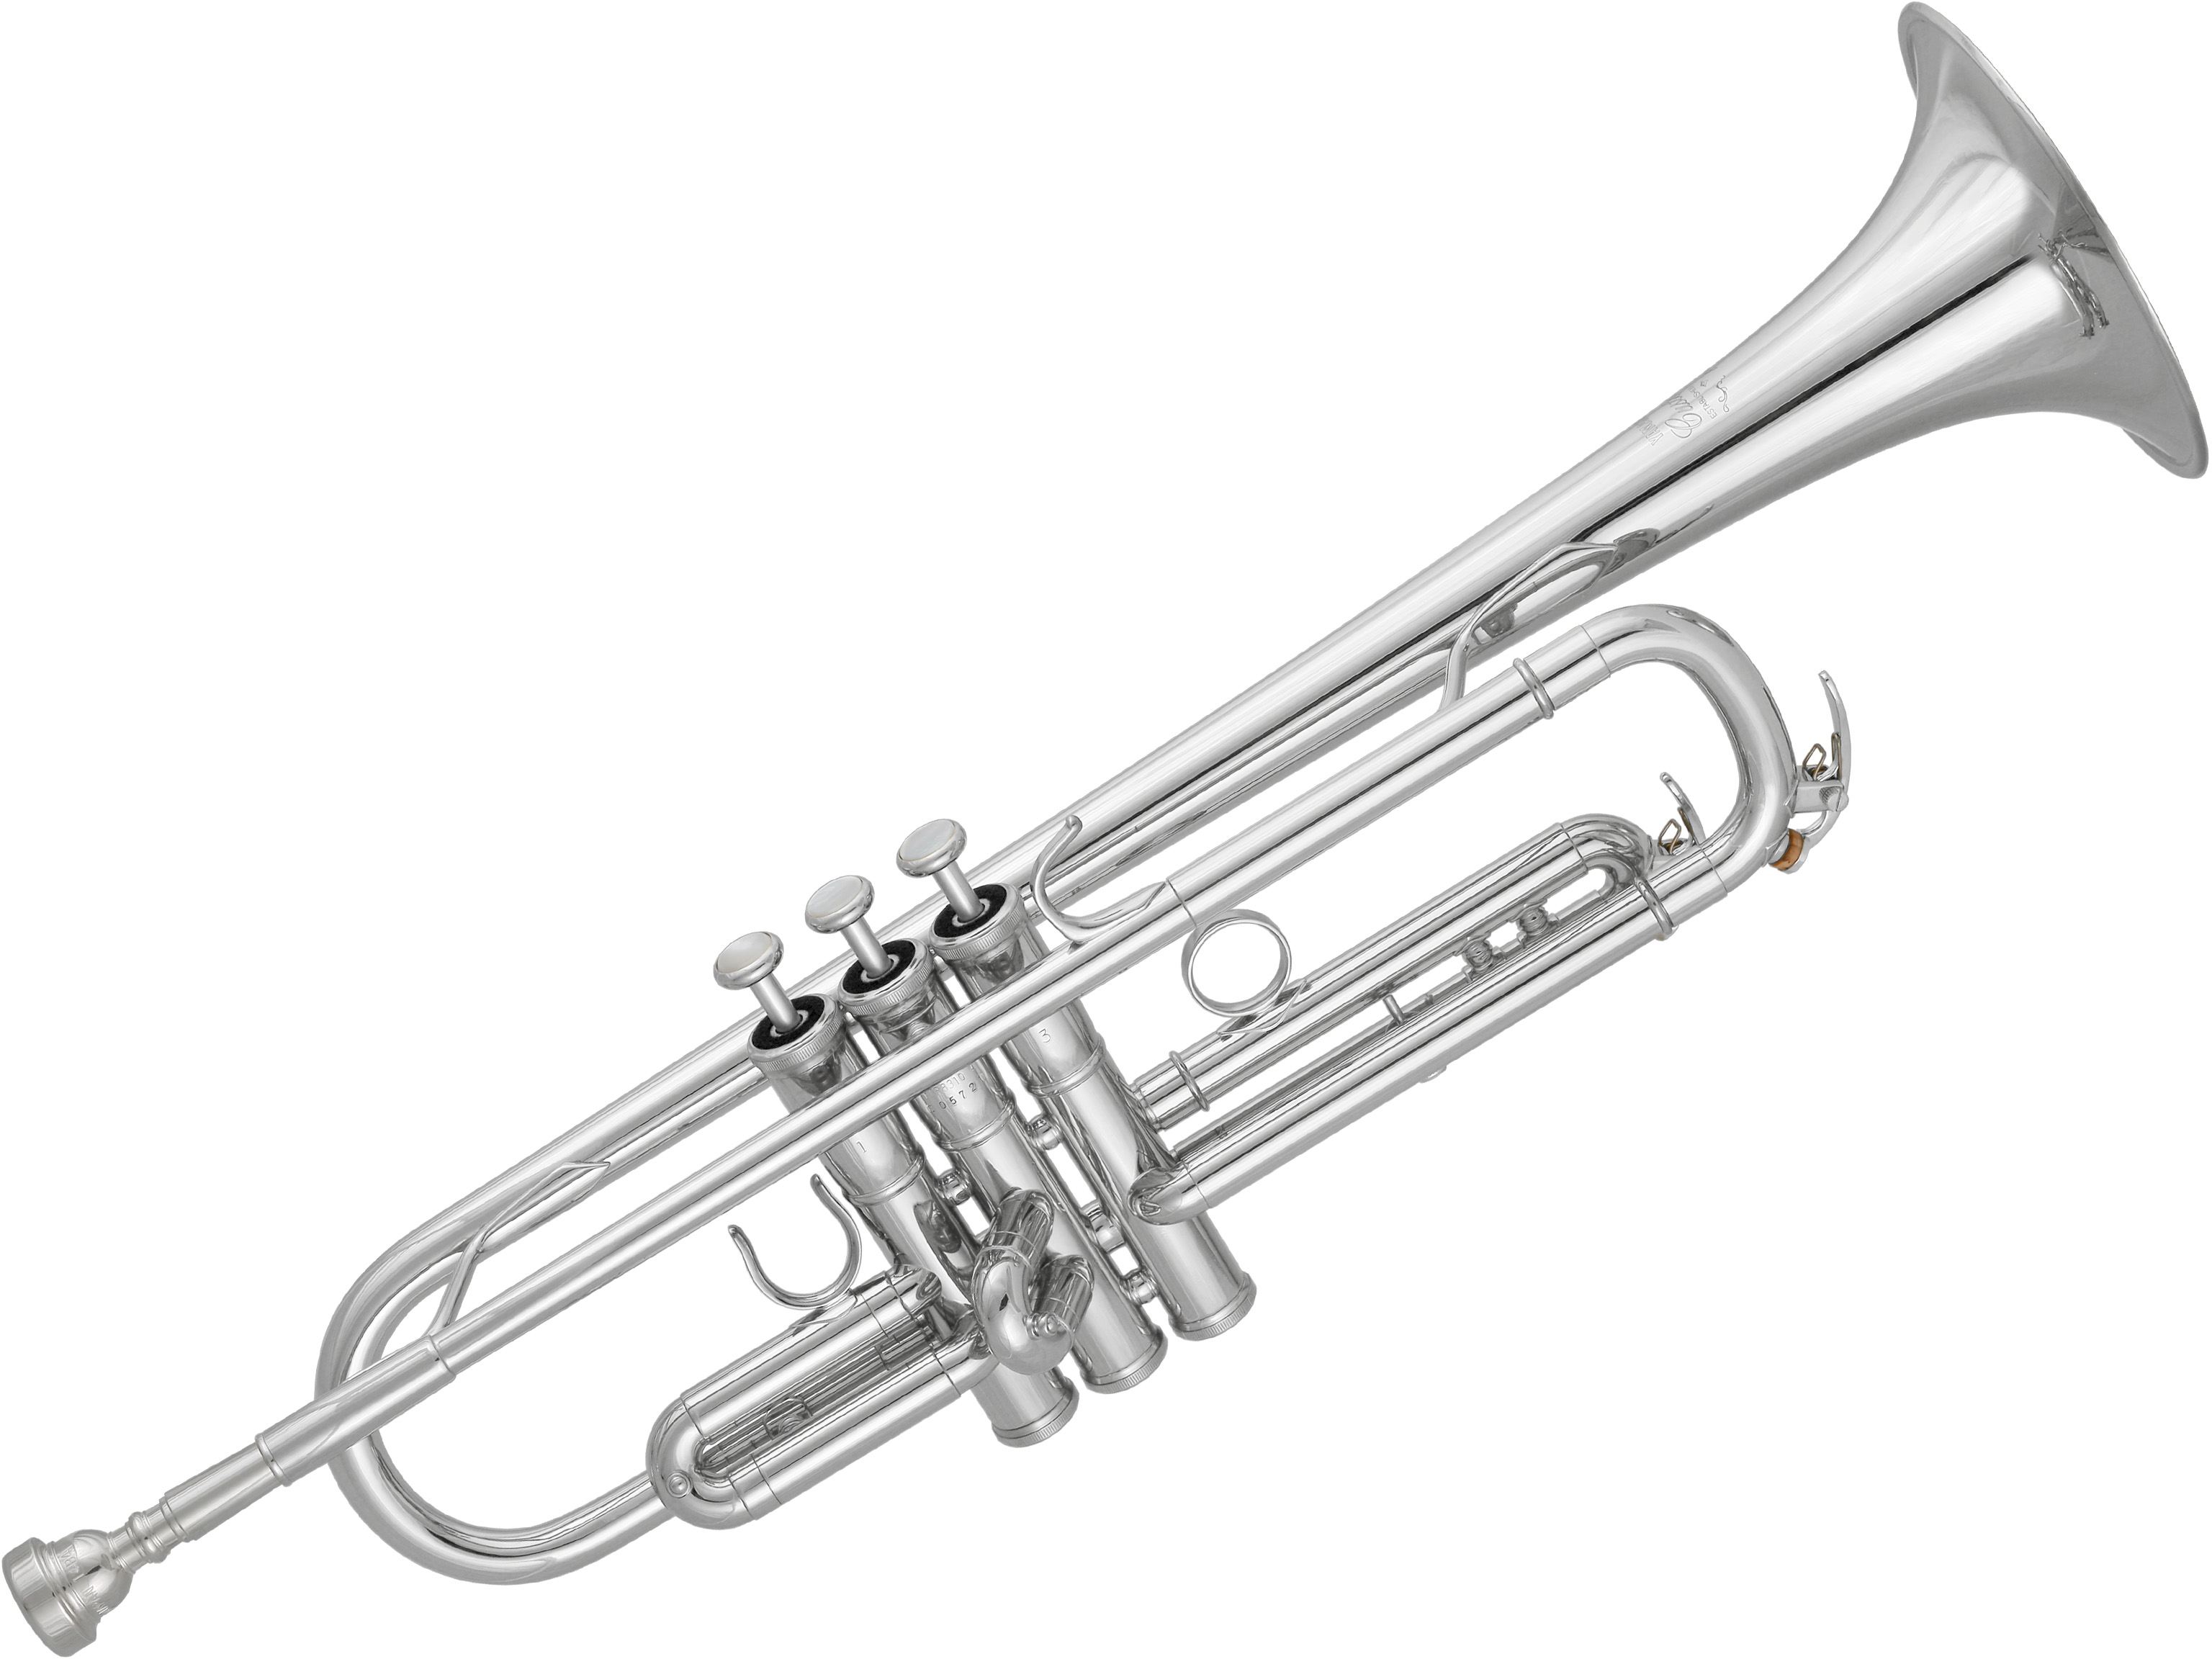 Yamaha YTR-8310 ZS 03 B-Trompete